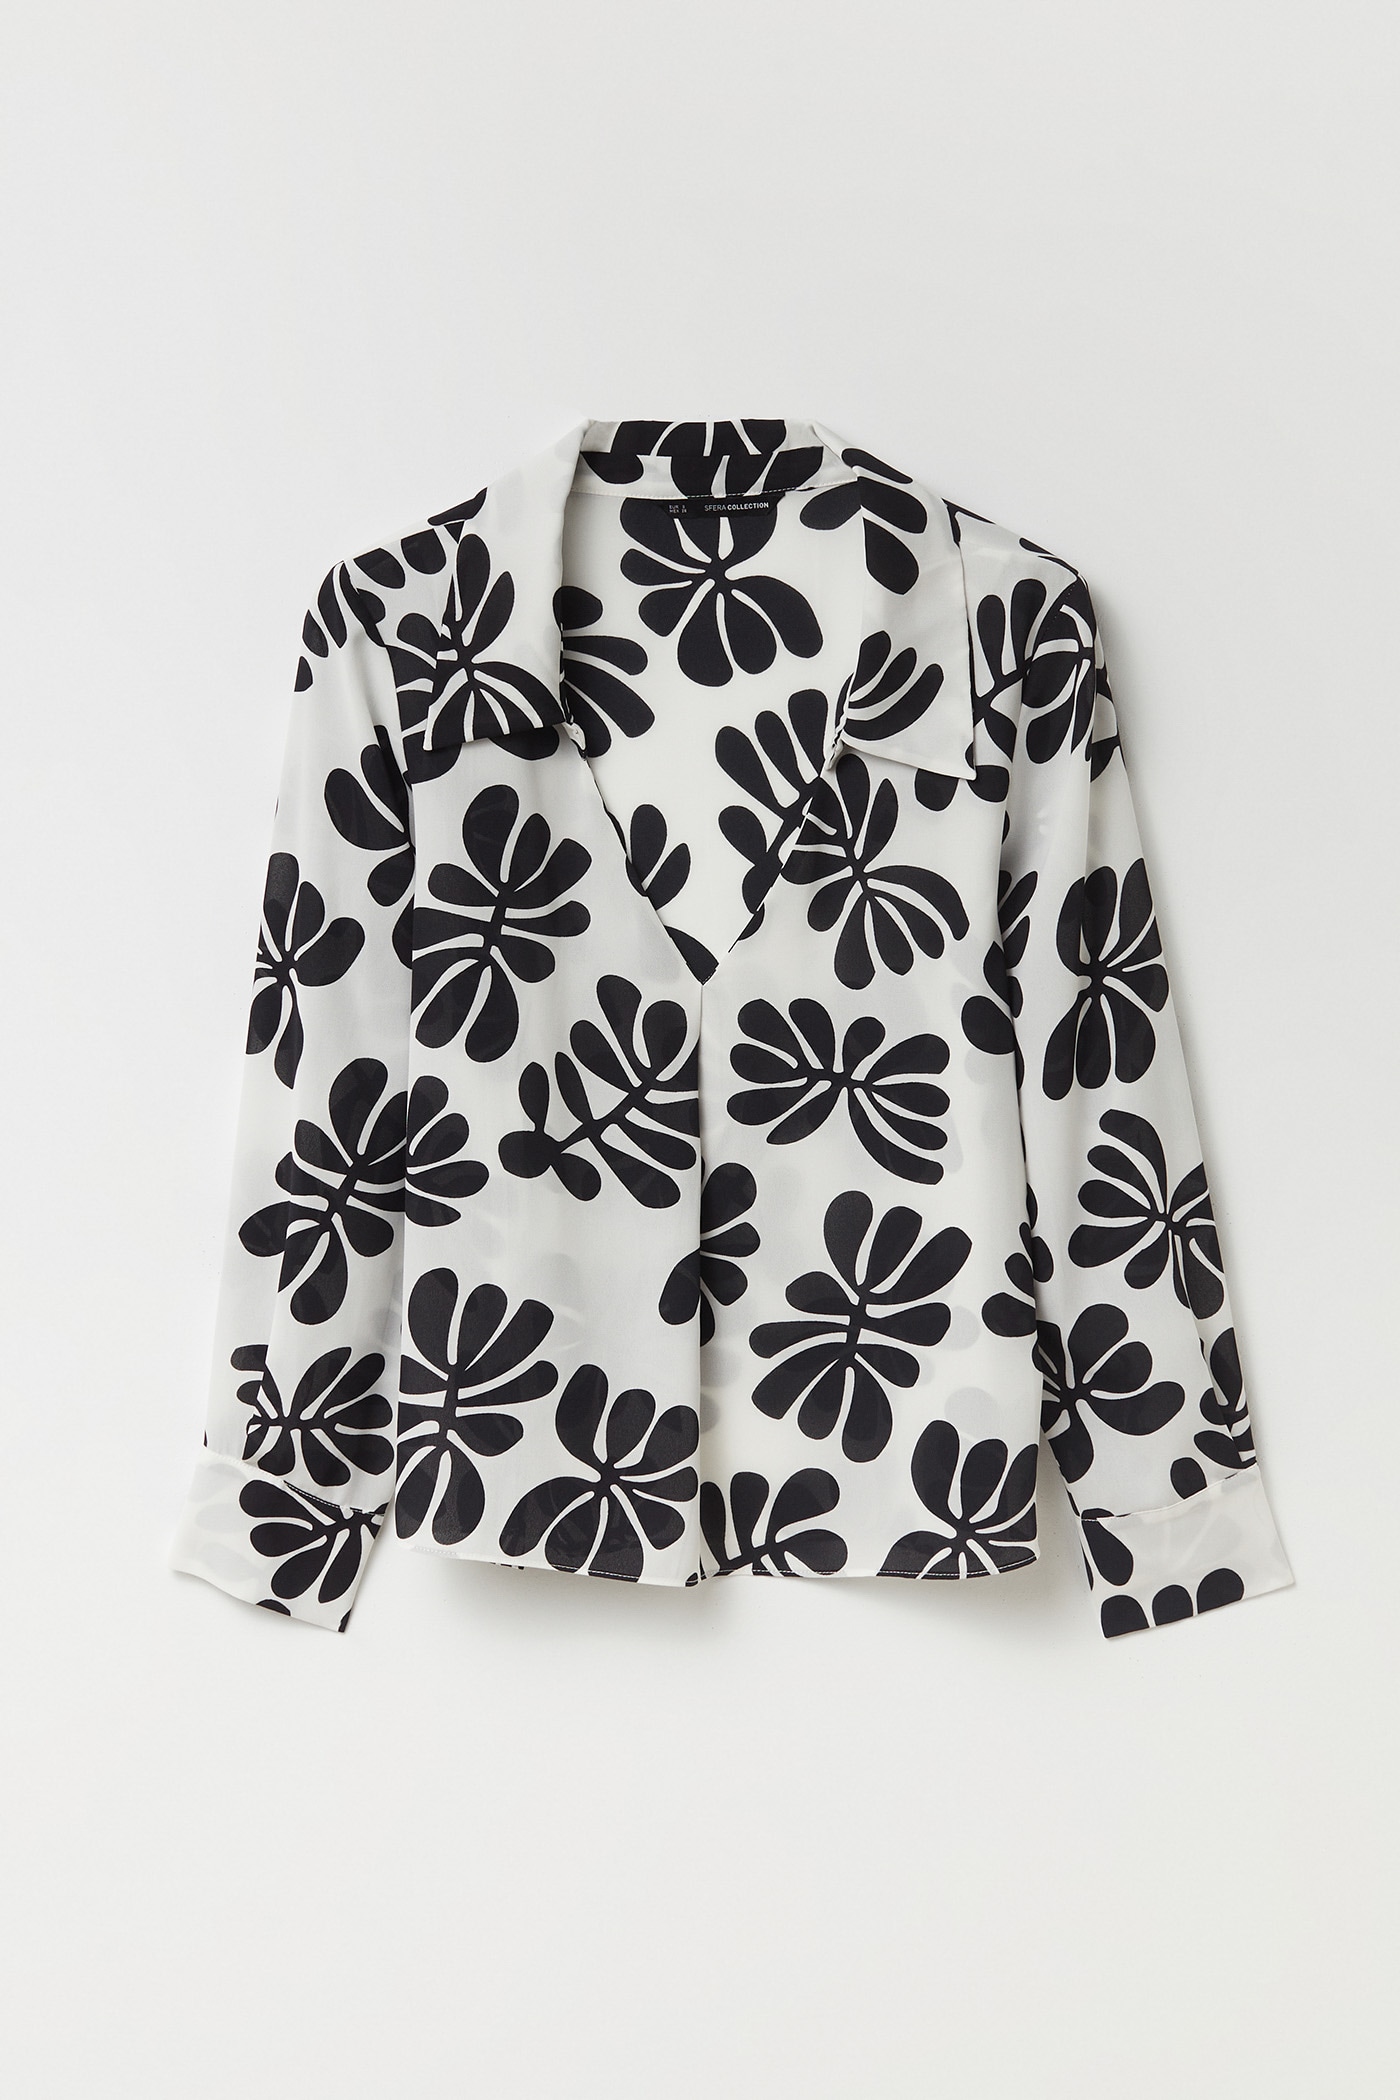 La blusa de Sfera al más puro estilo Matisse que pega con todos tus looks